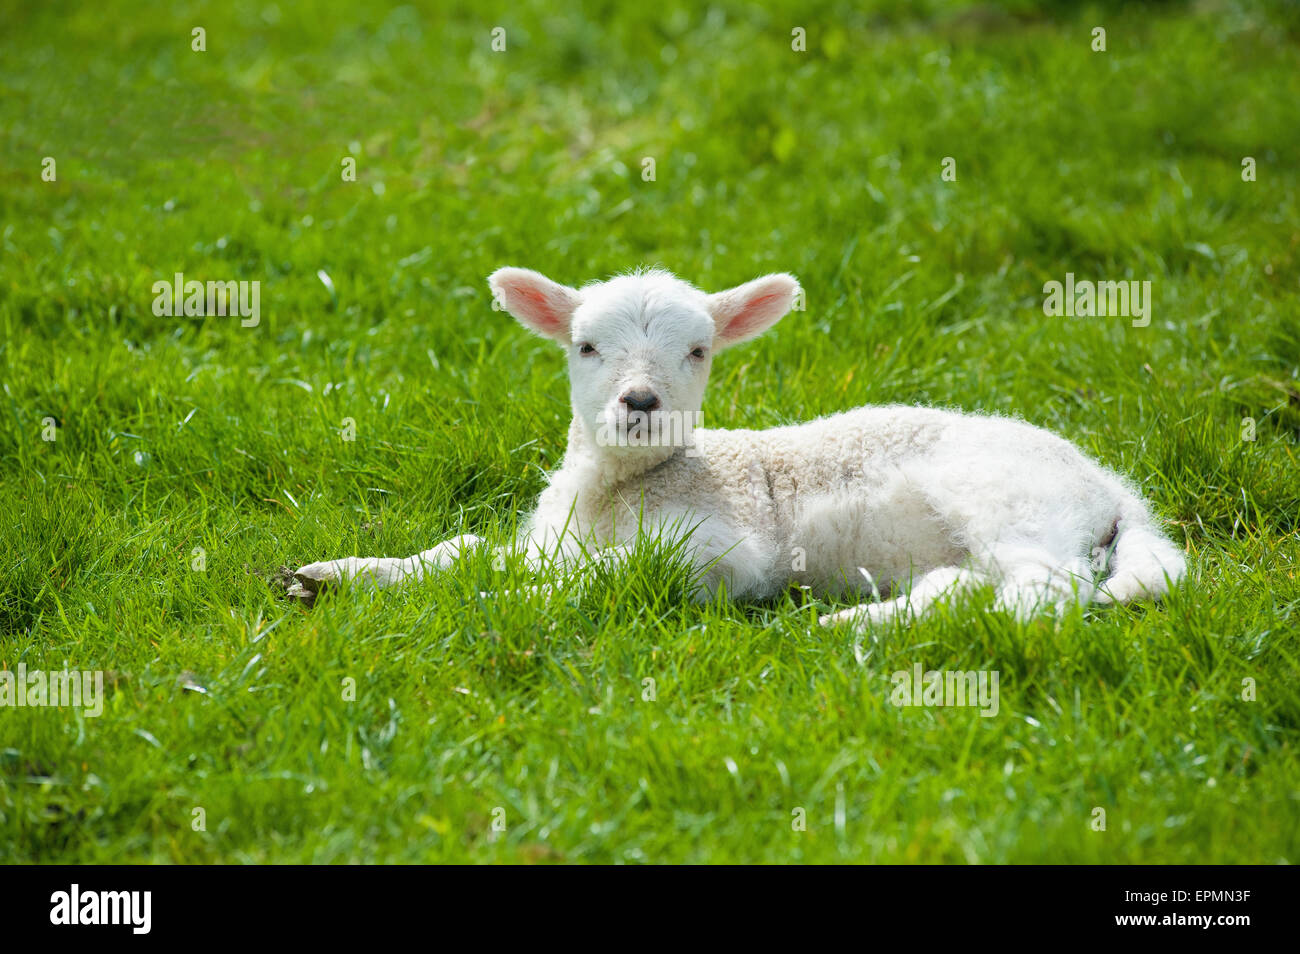 Un piccolo giovane agnello con pelliccia bianca sdraiati sull'erba con la sua testa in alto Foto Stock